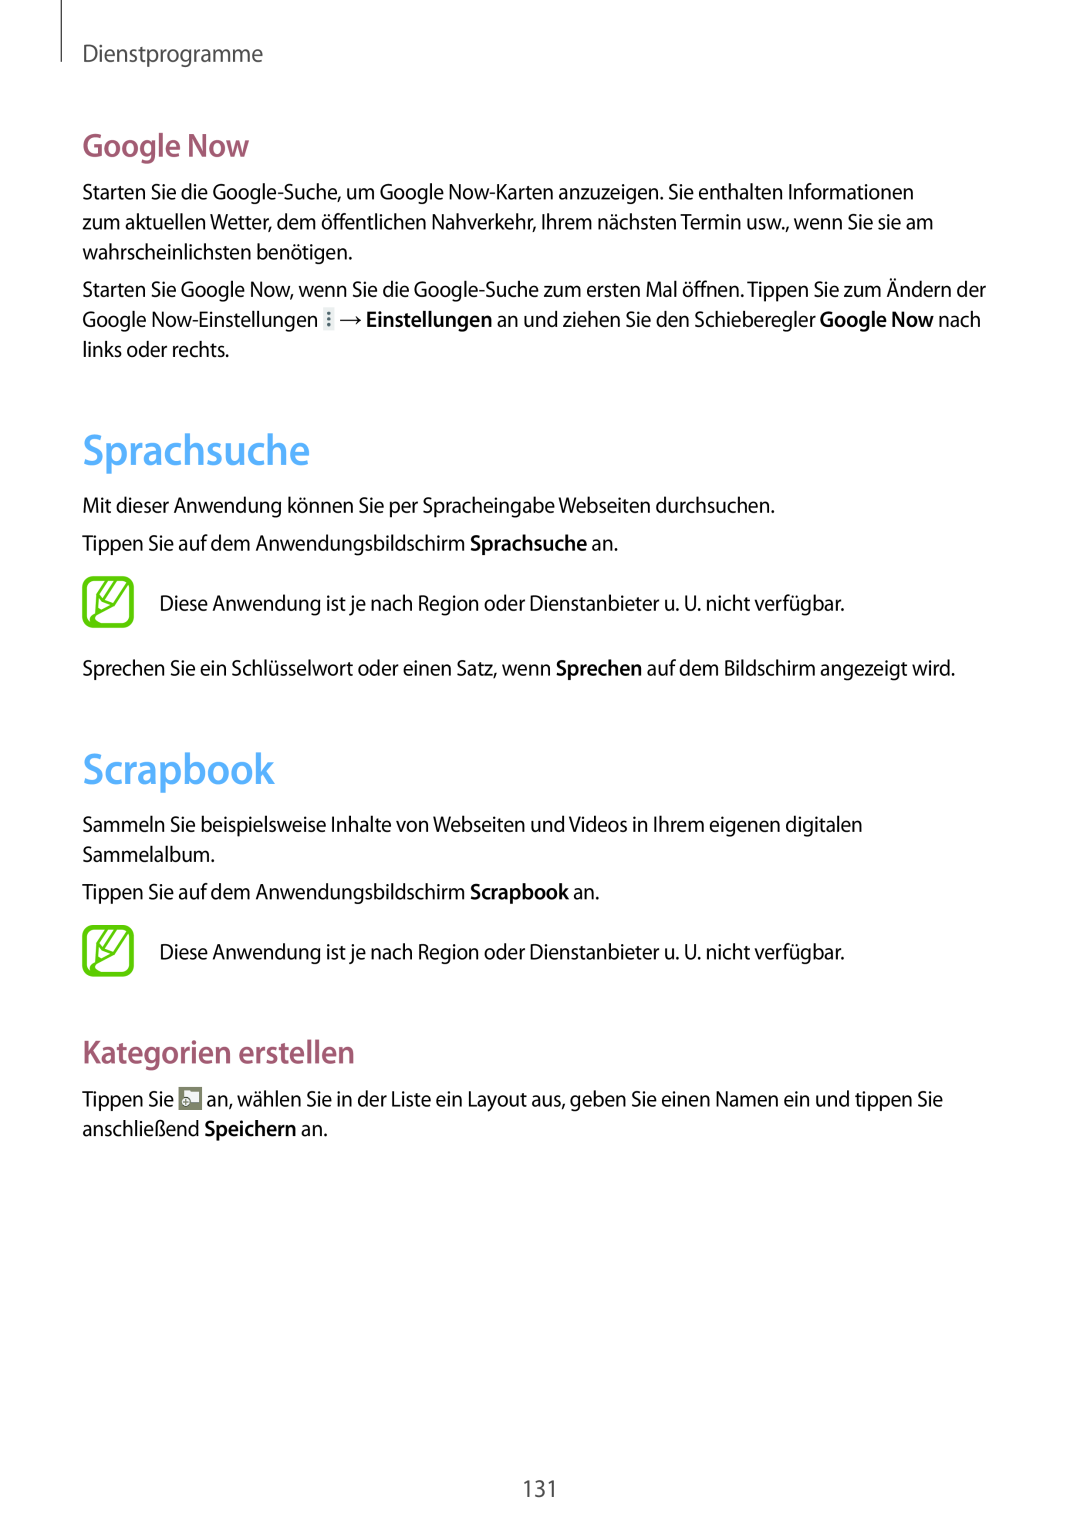 Samsung SM-P9000ZKAXEO, SM-P9000ZWAATO manual Sprachsuche, Scrapbook, Google Now, Kategorien erstellen, Dienstprogramme 